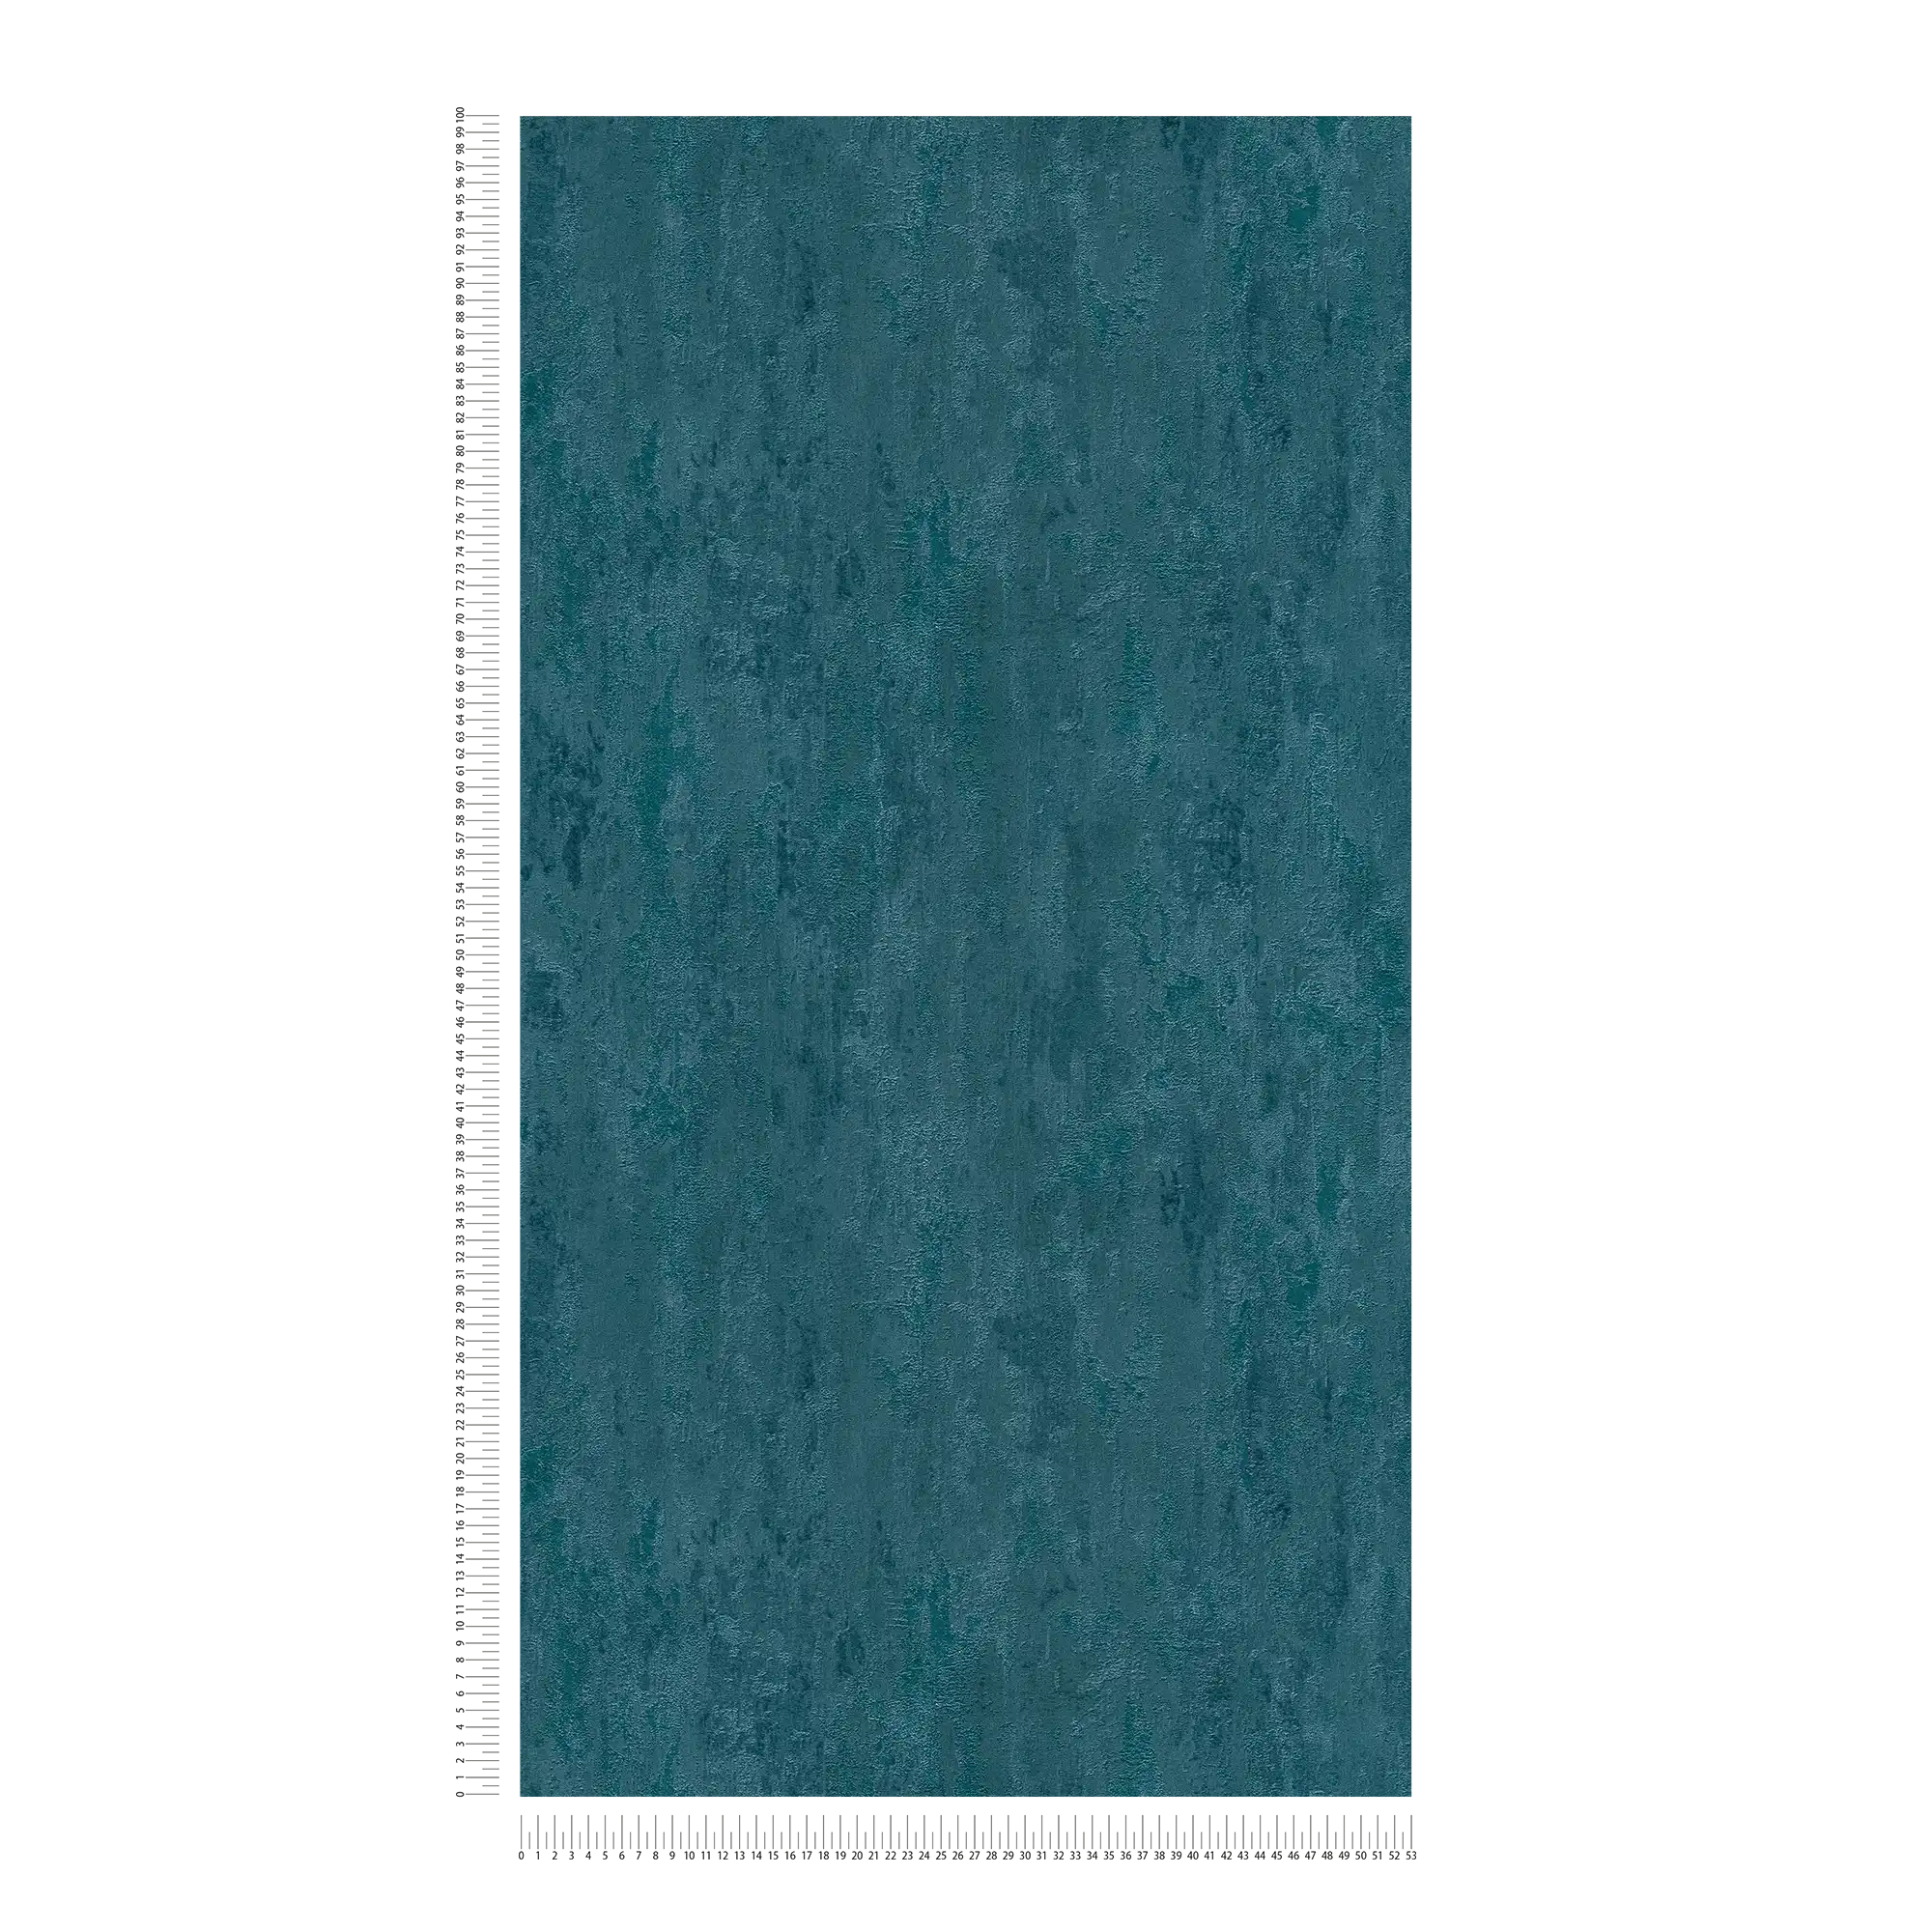             carta da parati in stile industriale con effetto texture - blu, metallizzata
        